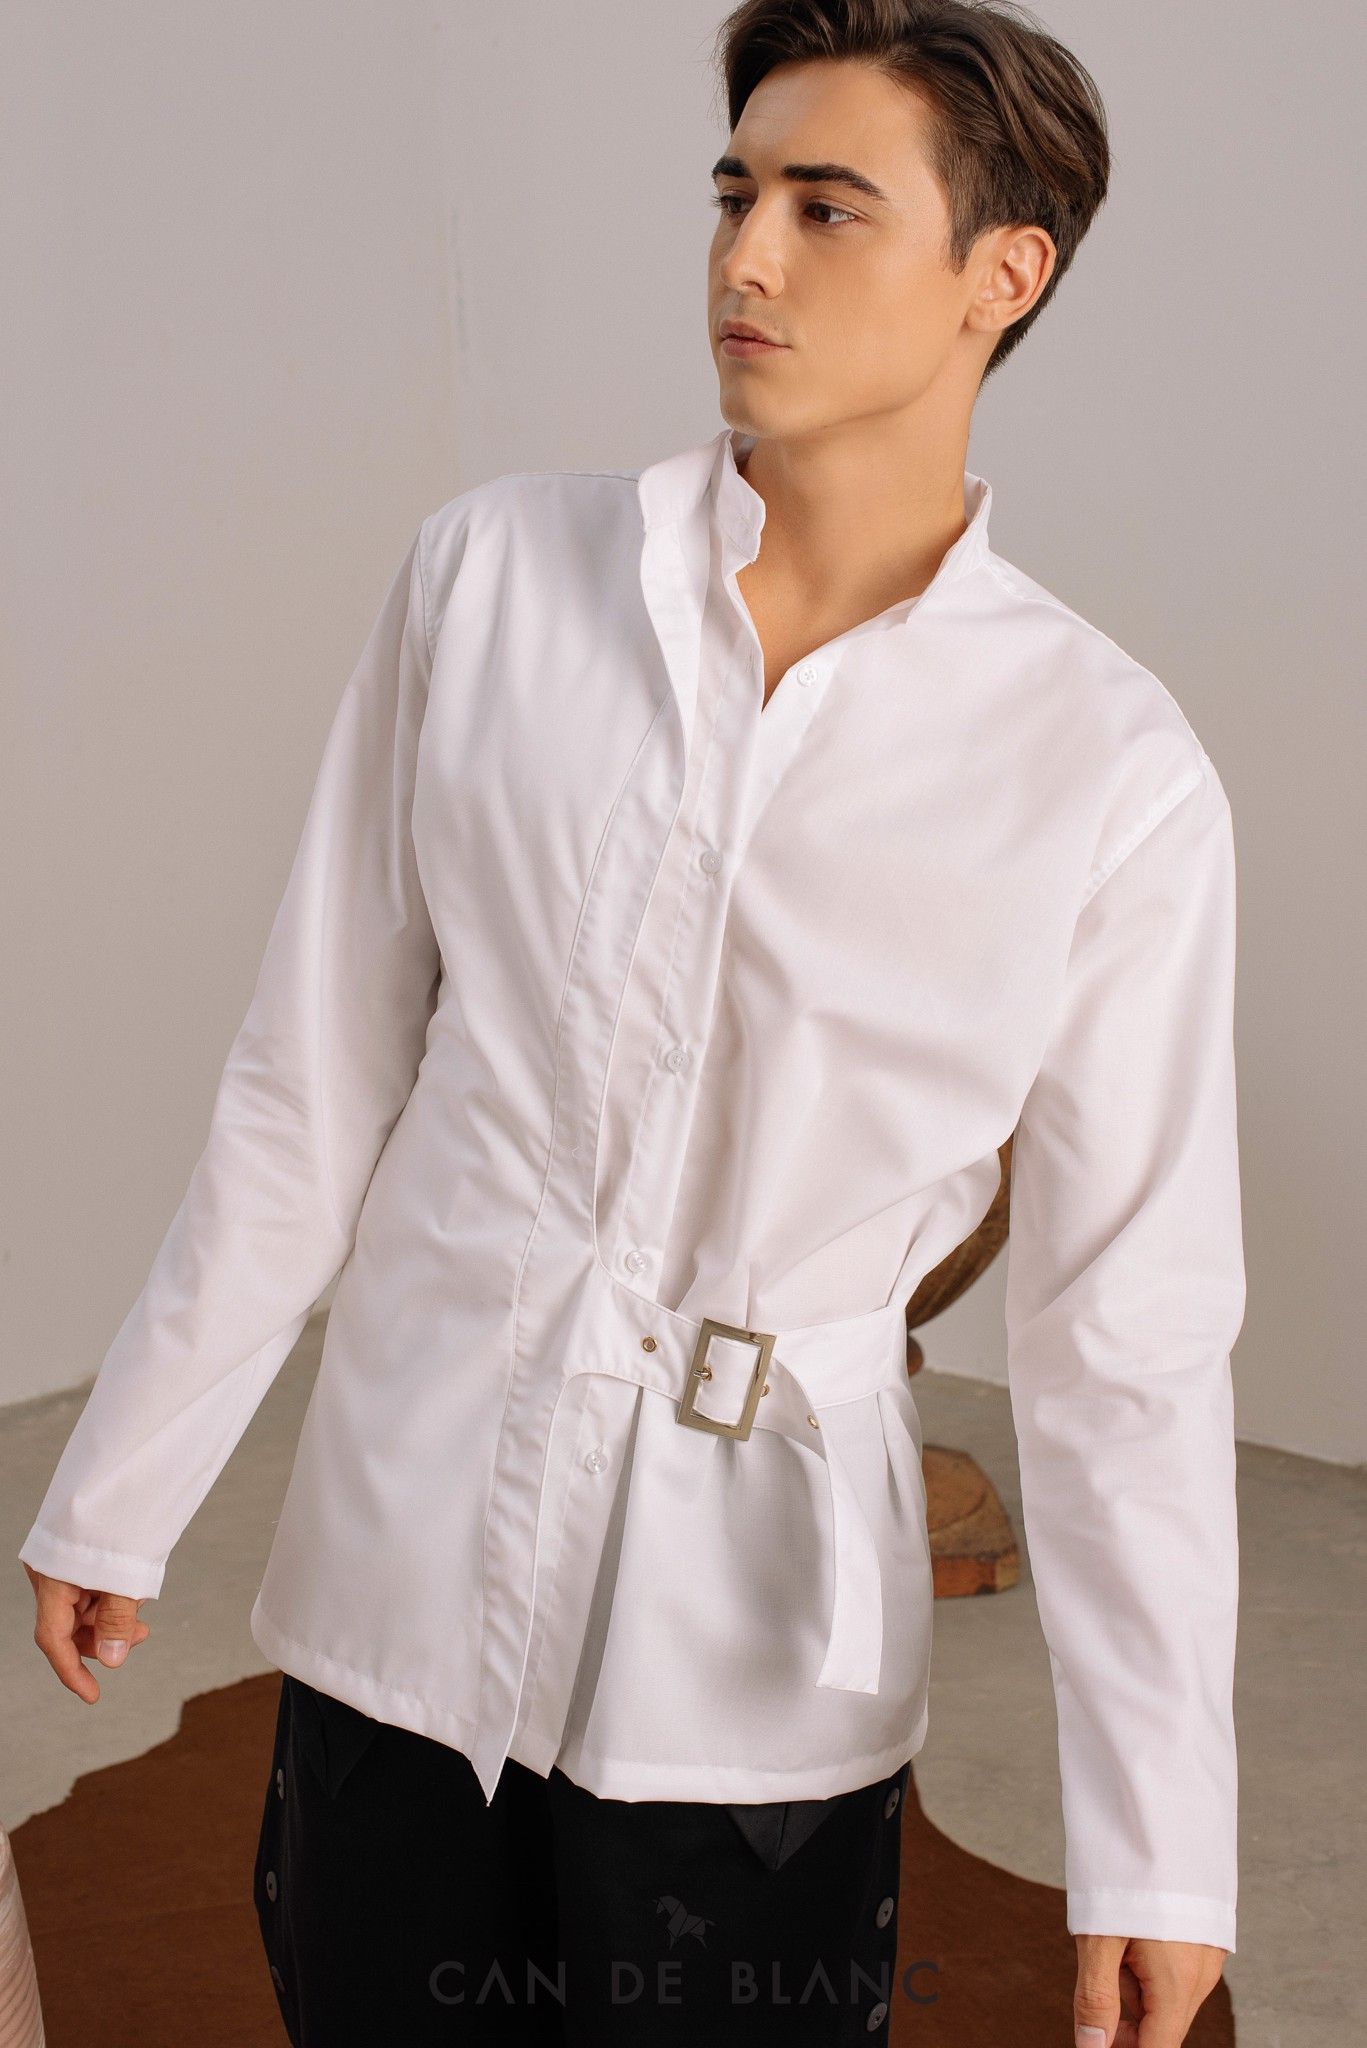 Collar White Shirt mix Belt